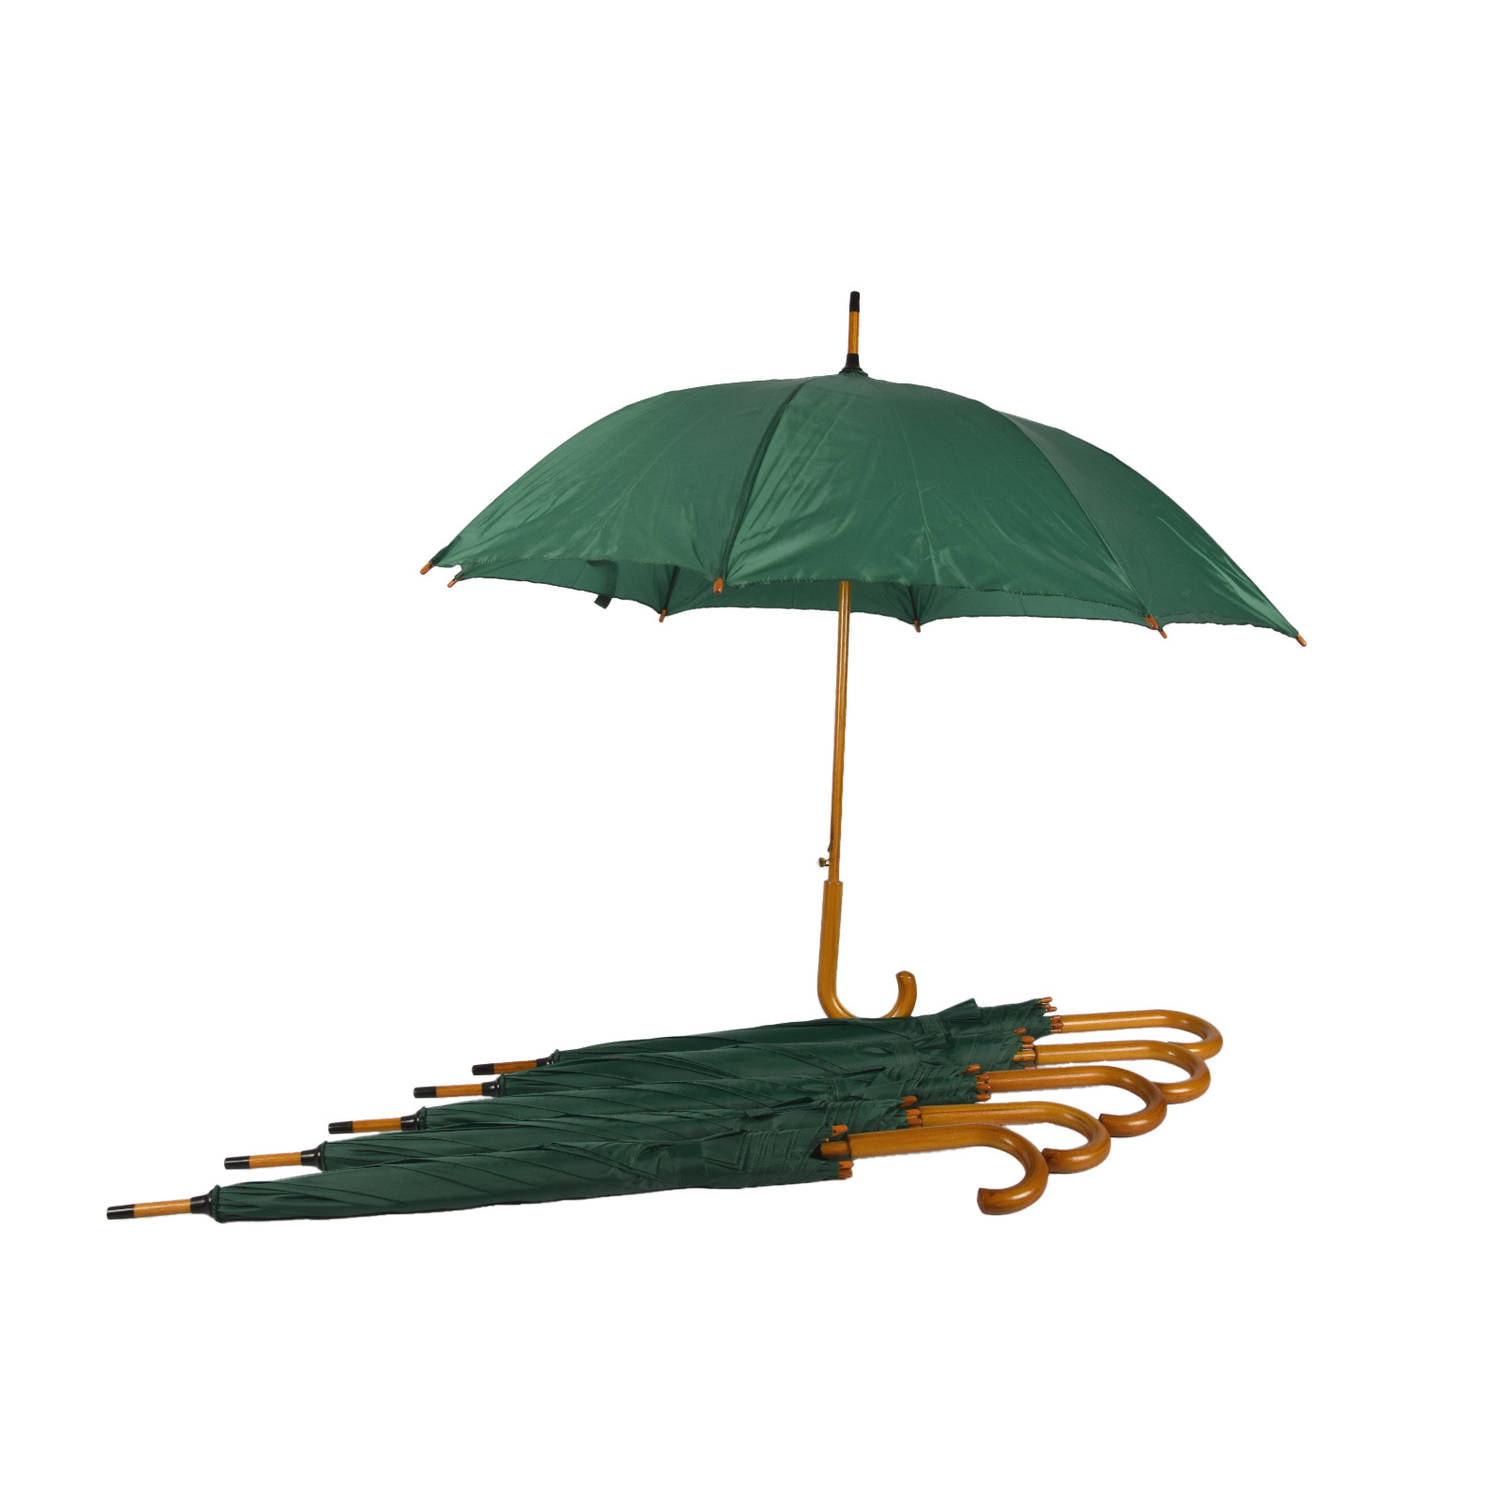 Stevige Groene Automatische Opvouwbare Paraplu voor Volwassenen – 102cm Diameter - Set van 6 - Scottish Highlands Design